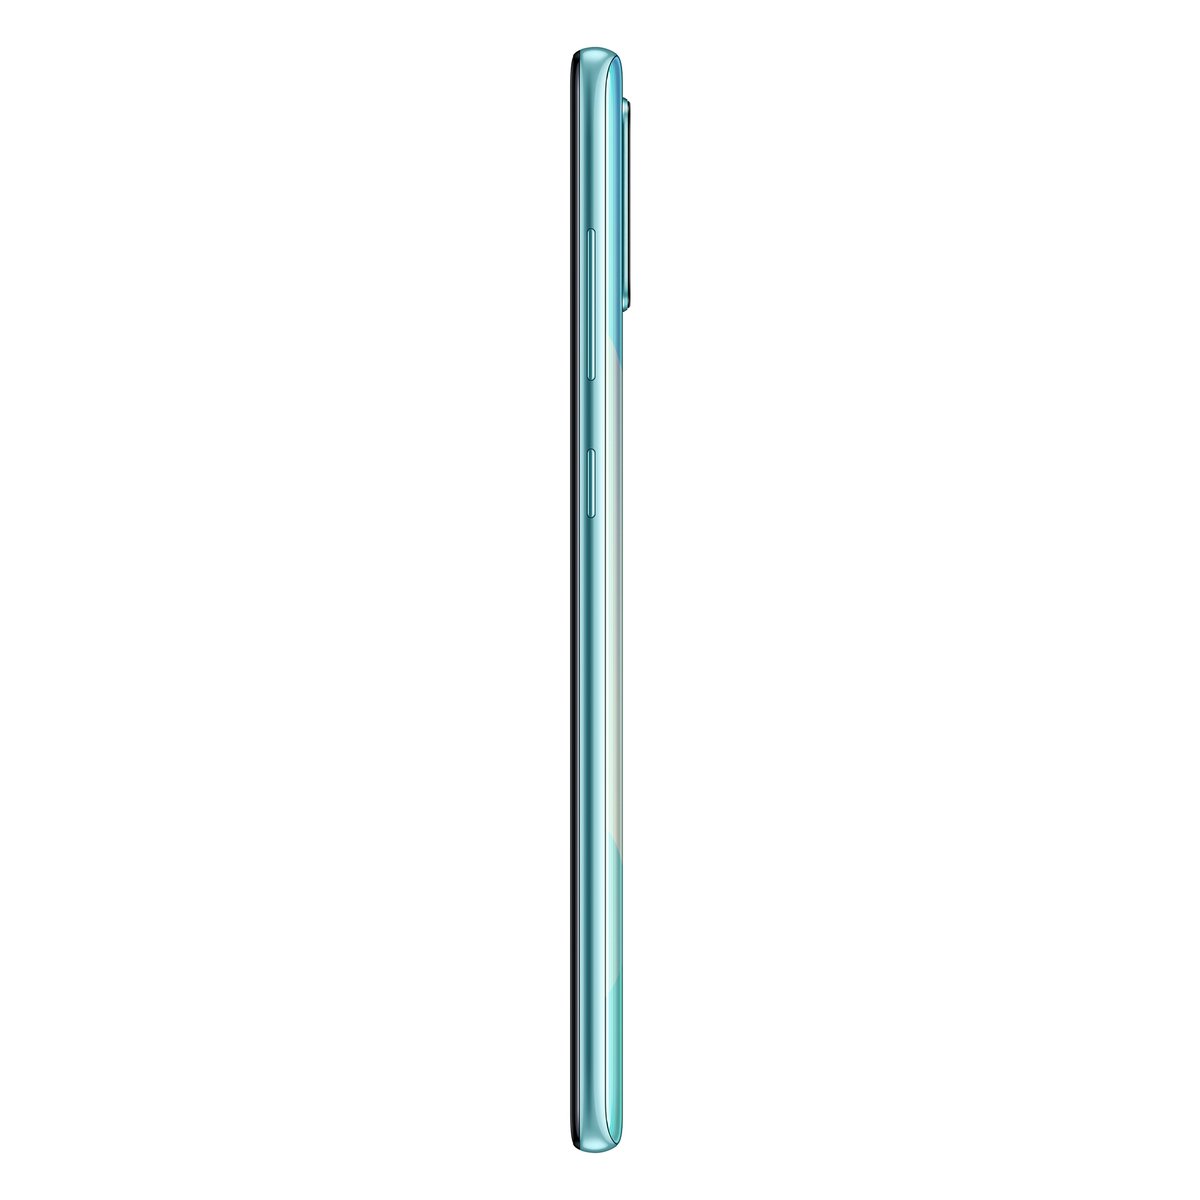 Samsung Galaxy A71 SMA715 128GB Blue